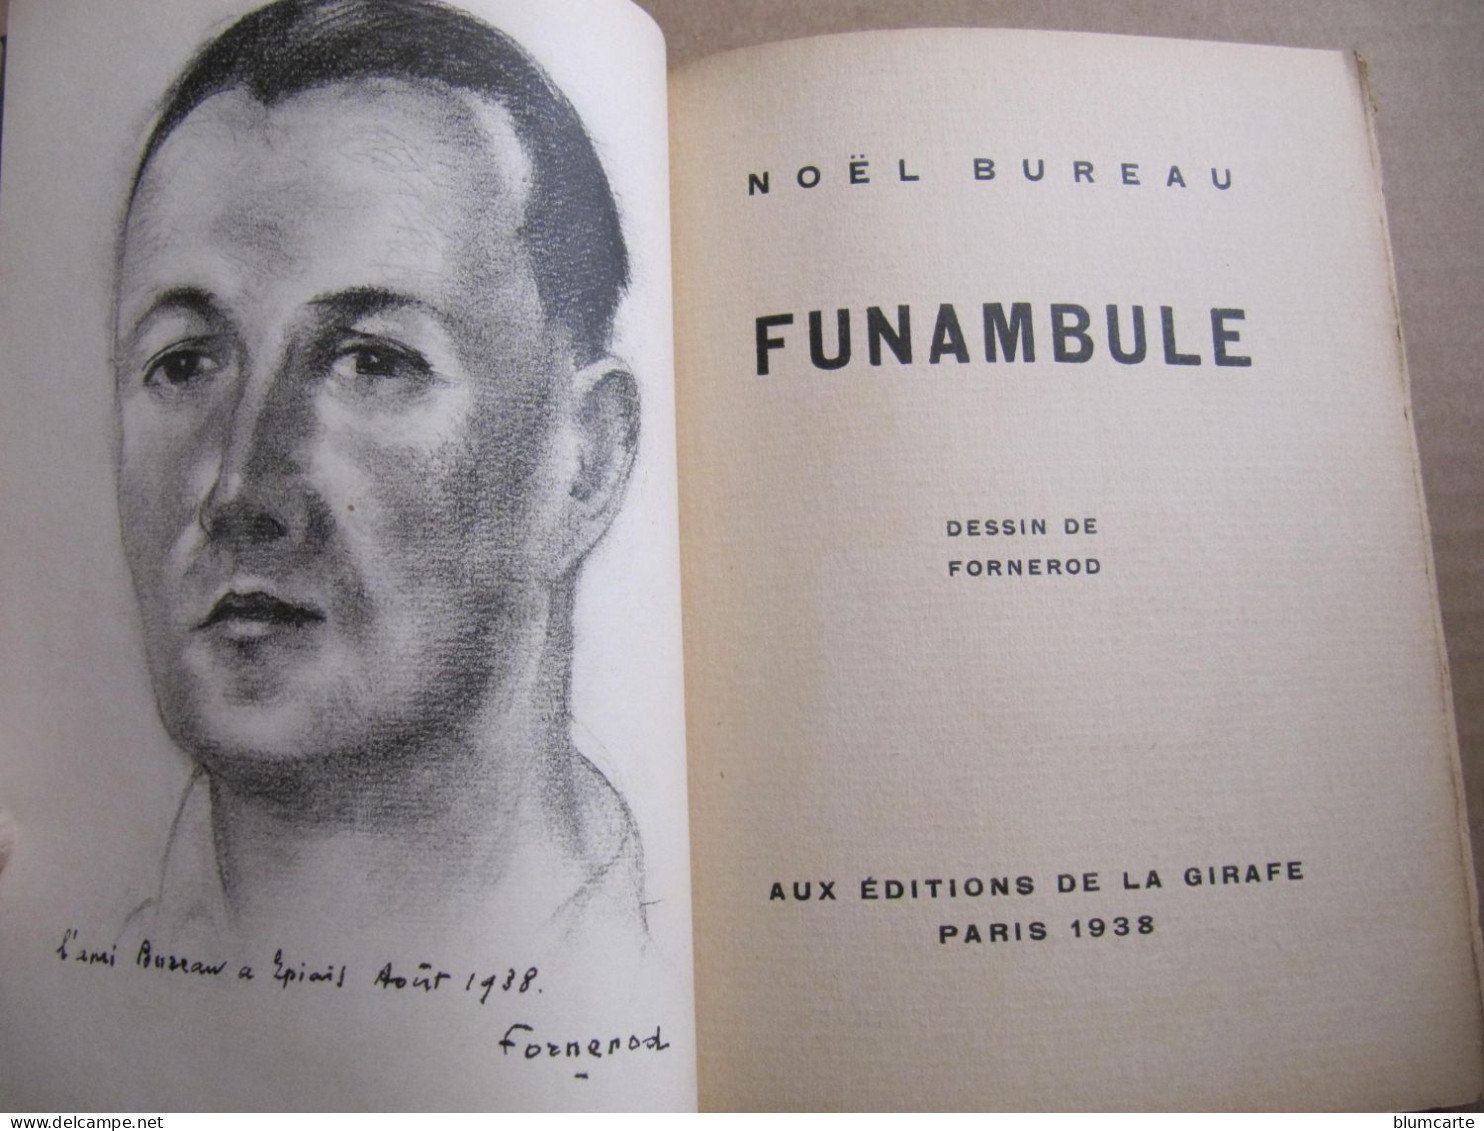 NOËL BUREAU - FUNAMBULE - DESSIN DE FORNEROD - DEDICACE - Exemplaire Sur VERGE BOUFFANT N° 320 - 1938 - Livres Dédicacés